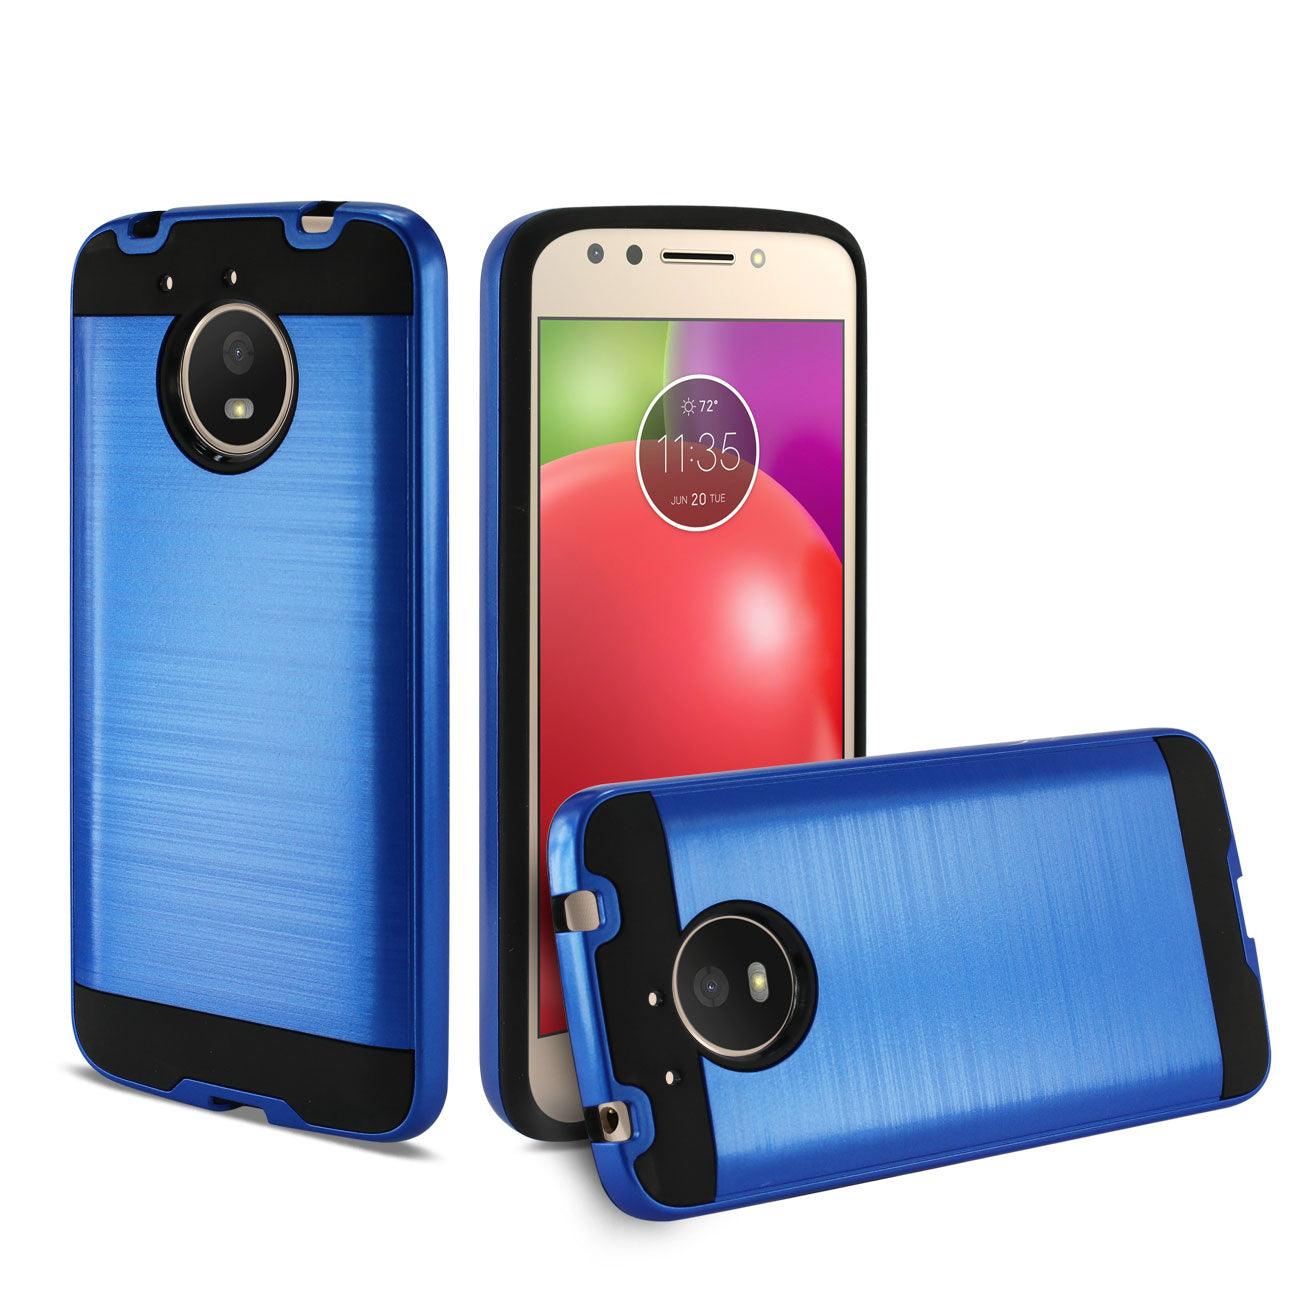 Smartphone Motorola Moto E4 Plus - Titanium - 16GB - Dual